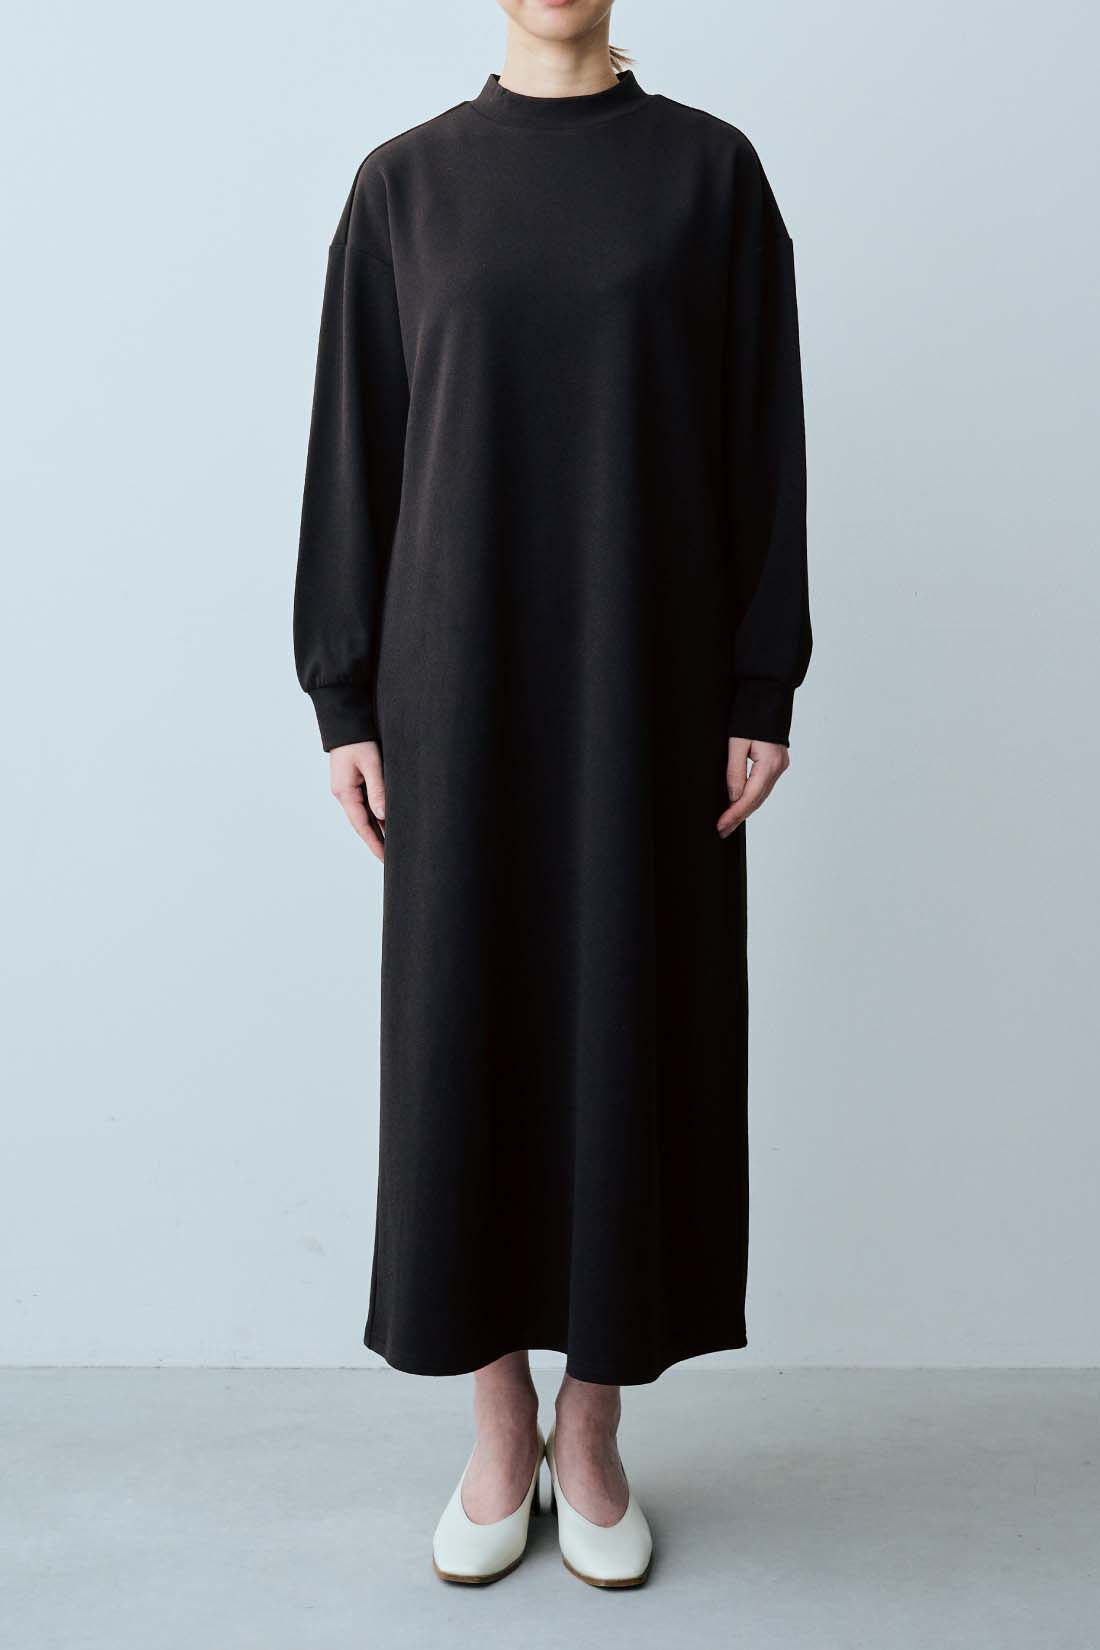 DRECO by IEDIT|IEDIT[イディット]　ツイードライクベスト＆ワンピースのモノトーンバランスセット〈ブラック〉|一枚で着てもきれいなブラックワンピは、ロングシーズン着まわし自在。